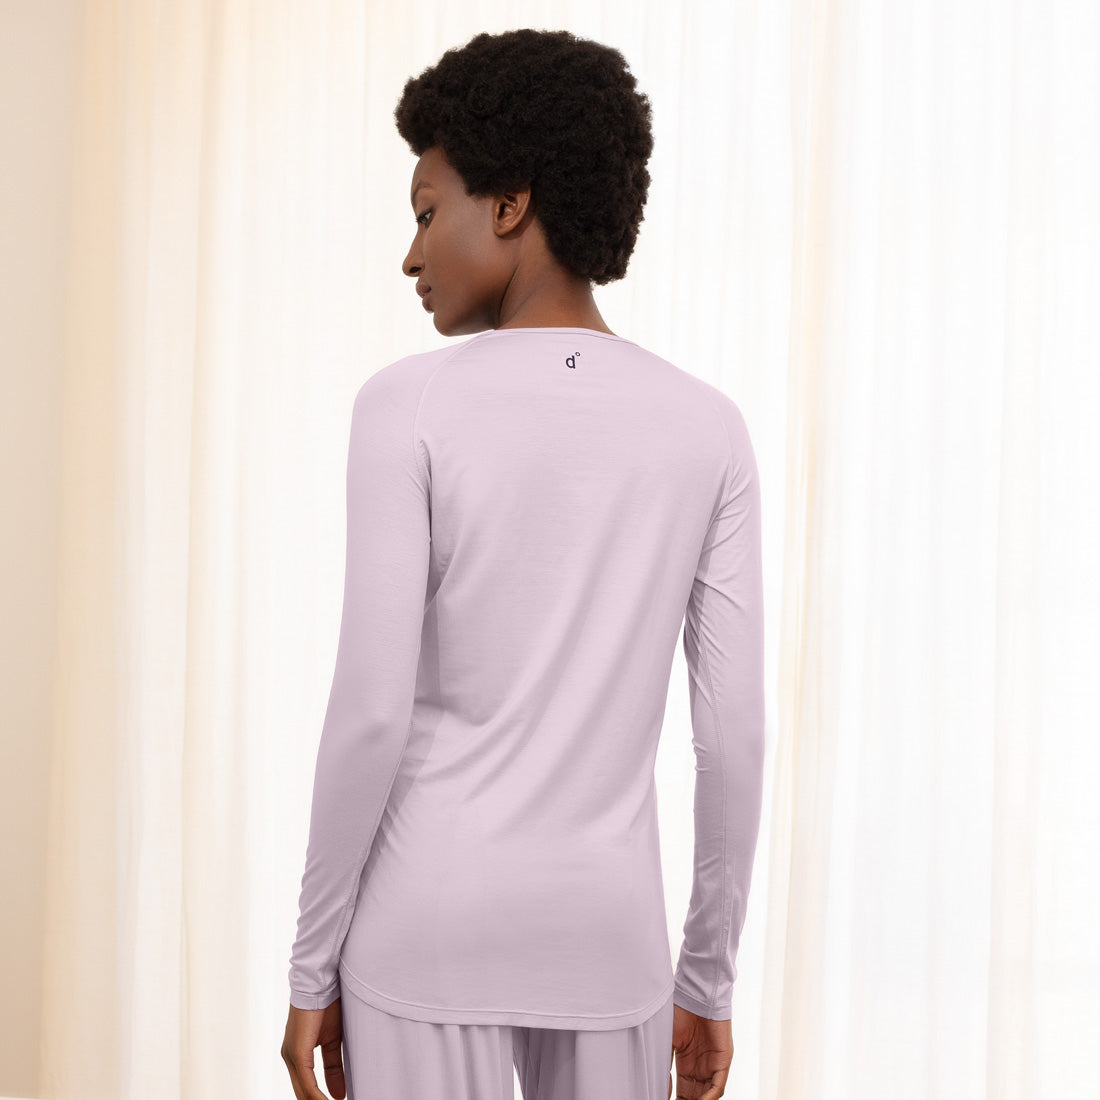 Cooling nightwear for women || Lavender